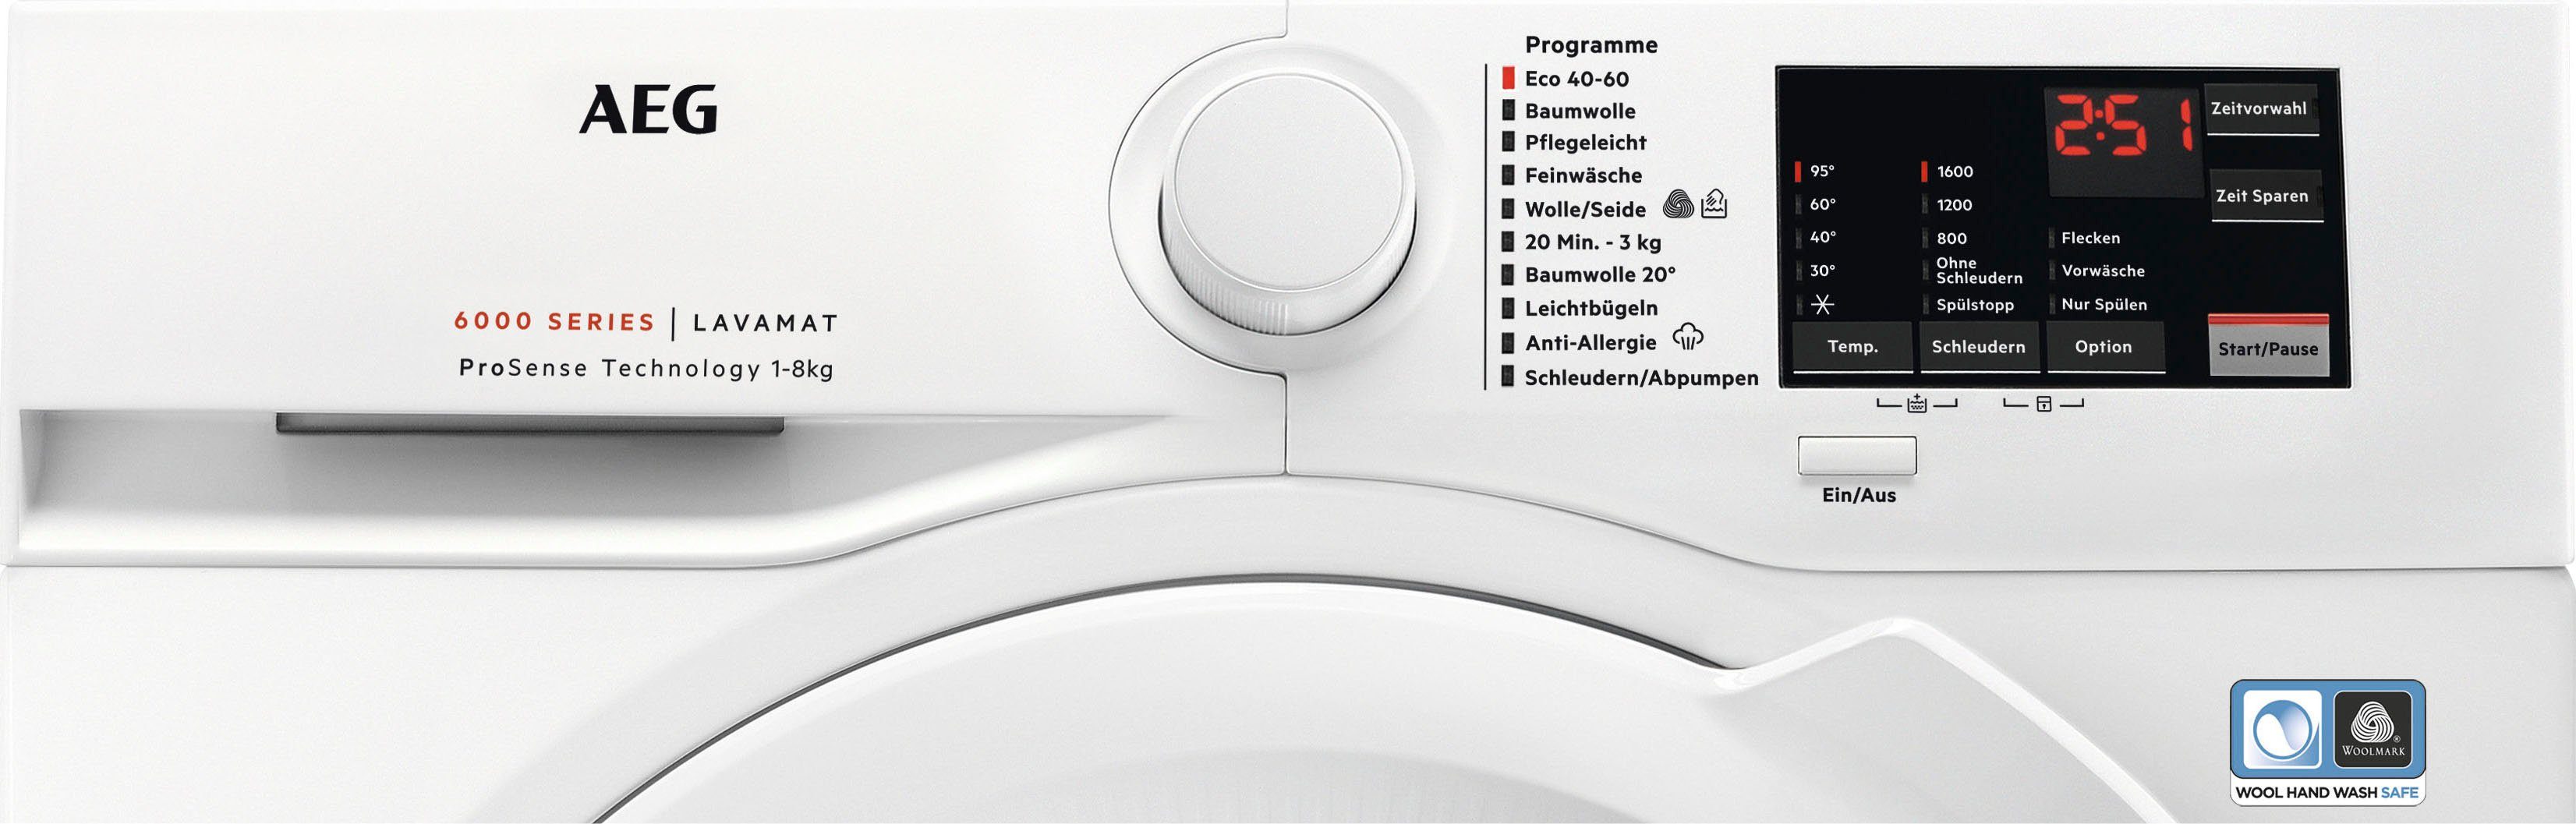 AEG Waschmaschine mit mit 6000 ProSense-Technologie kg, Dampf 8 L6FA68FL, Programm Hygiene-/ Serie Anti-Allergie 1600 U/min